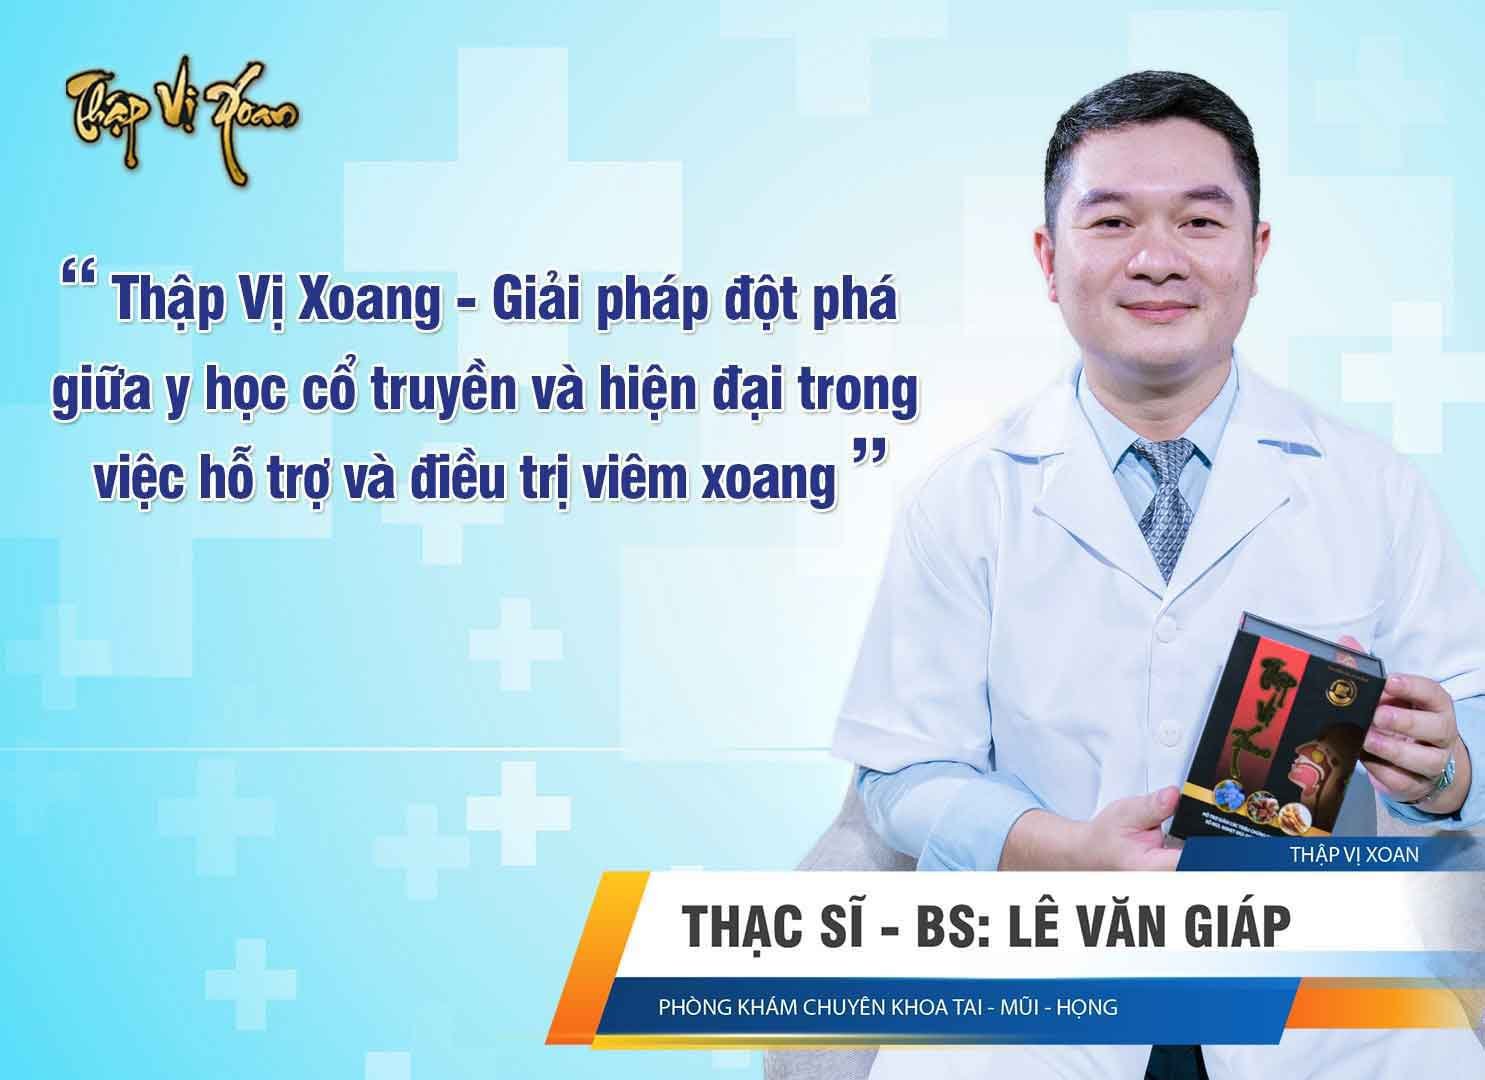 ThS.Bác sĩ Lê Văn Giáp đánh giá cao sản phẩm Thập Vị Xoang